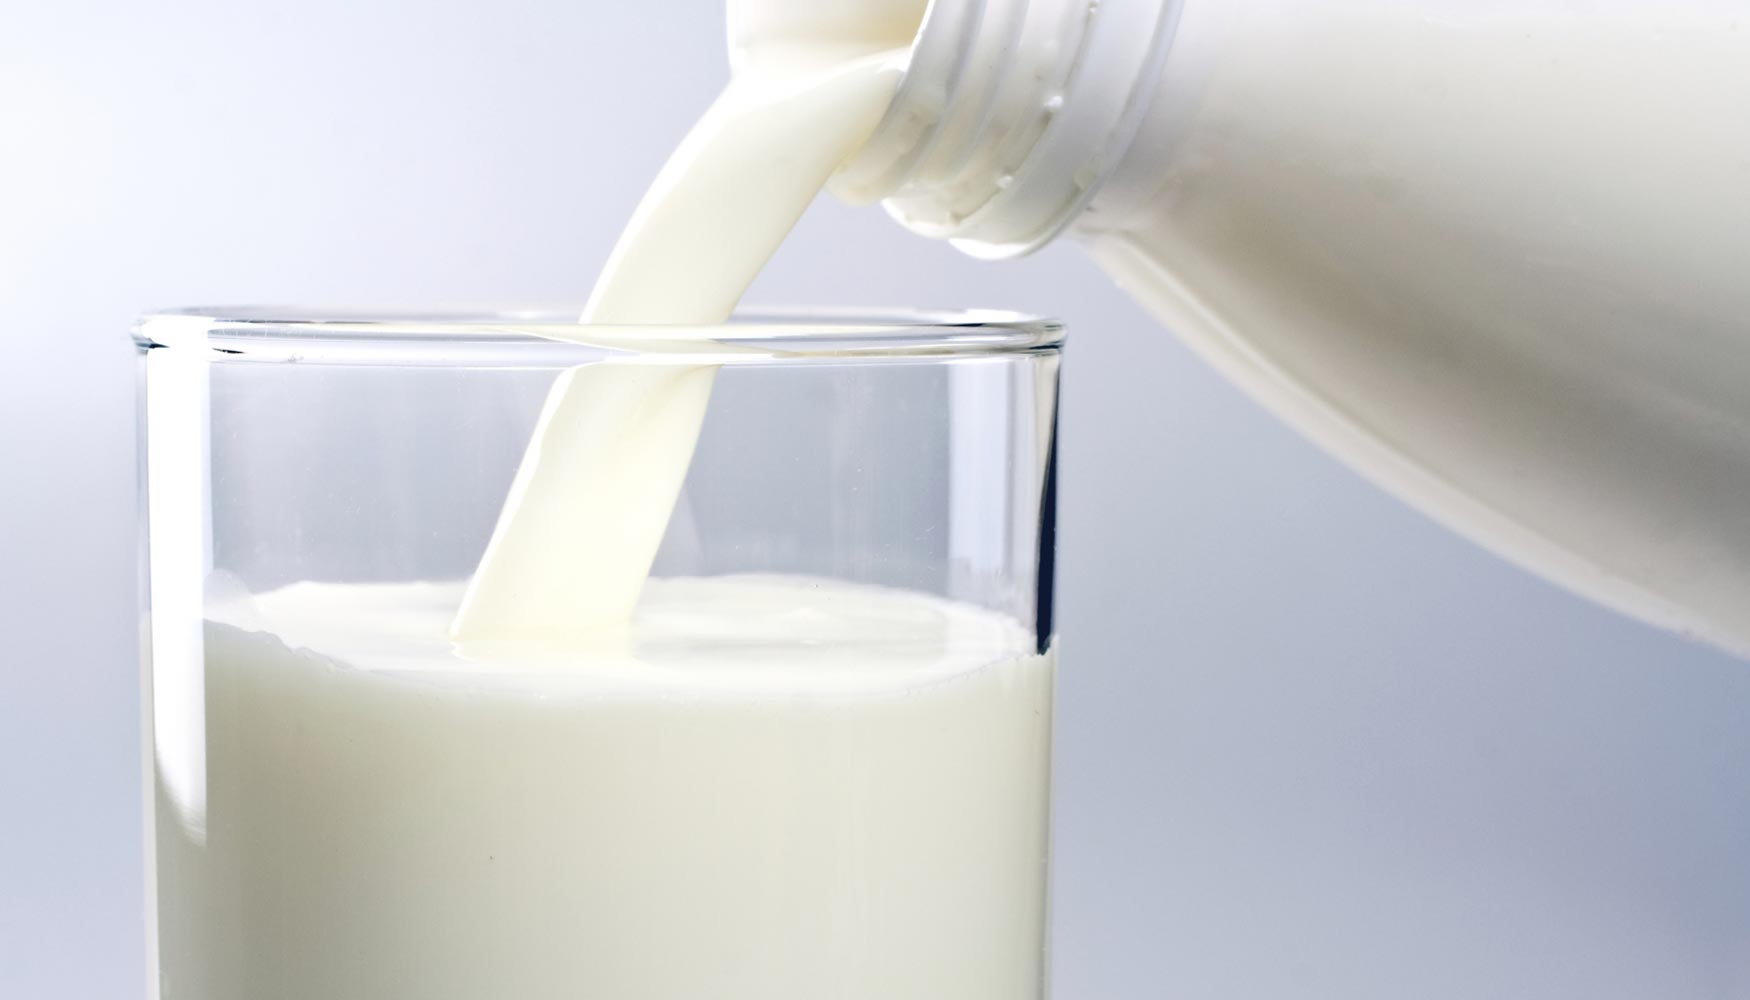 La leche proporciona beneficios probados para la salud que responden a las nuevas demandas del consumidor